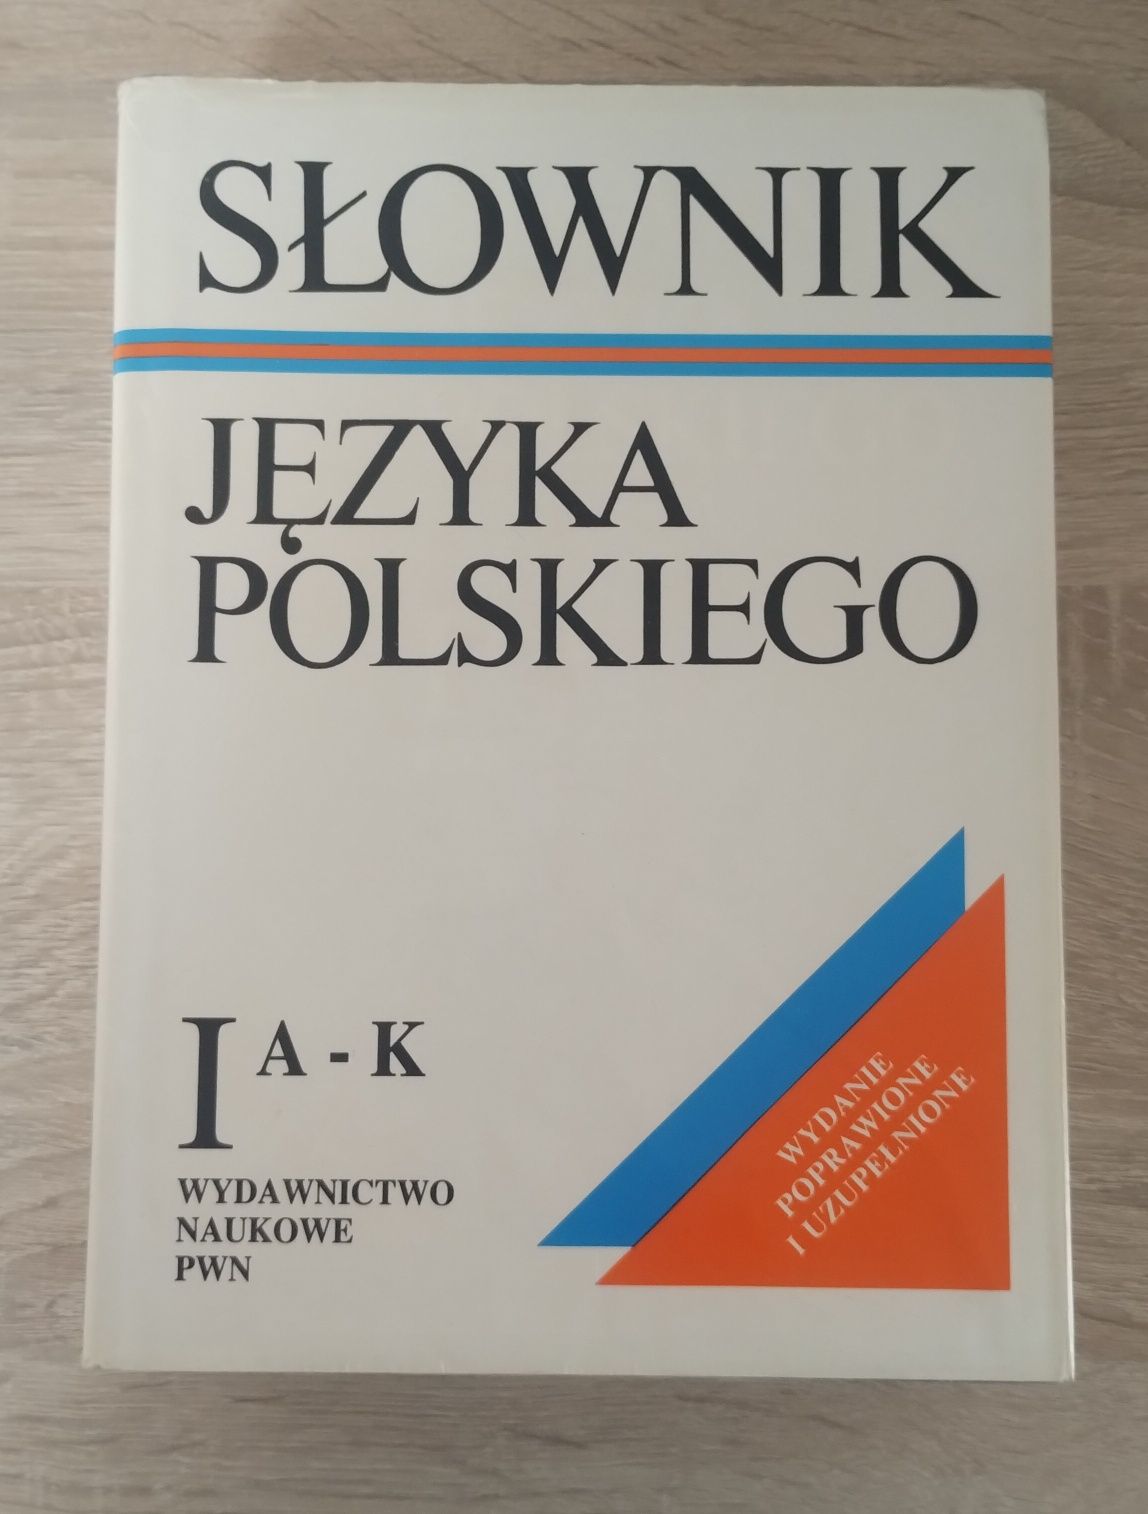 Słownik języka polskiego + słownik wyrazów obcych PWN